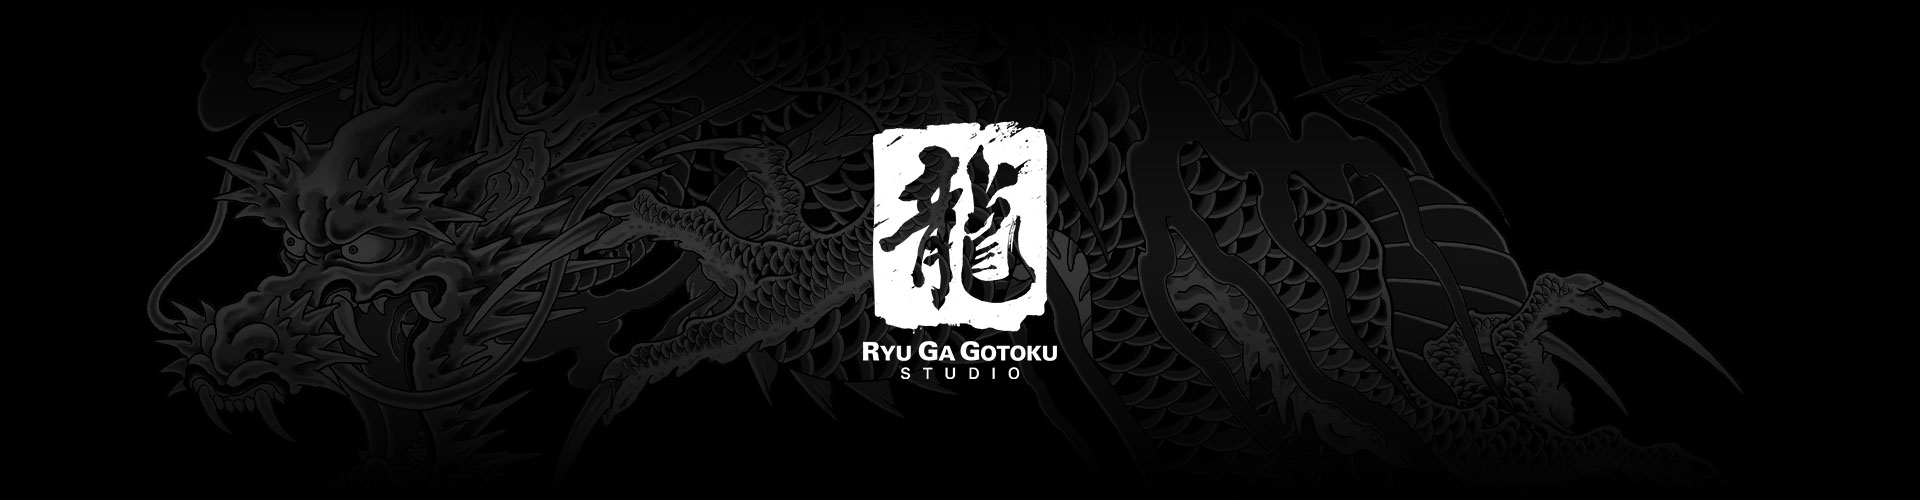 A Ryu Ga Gotoku Studio logója szürke sárkánytetoválással a háttérben.